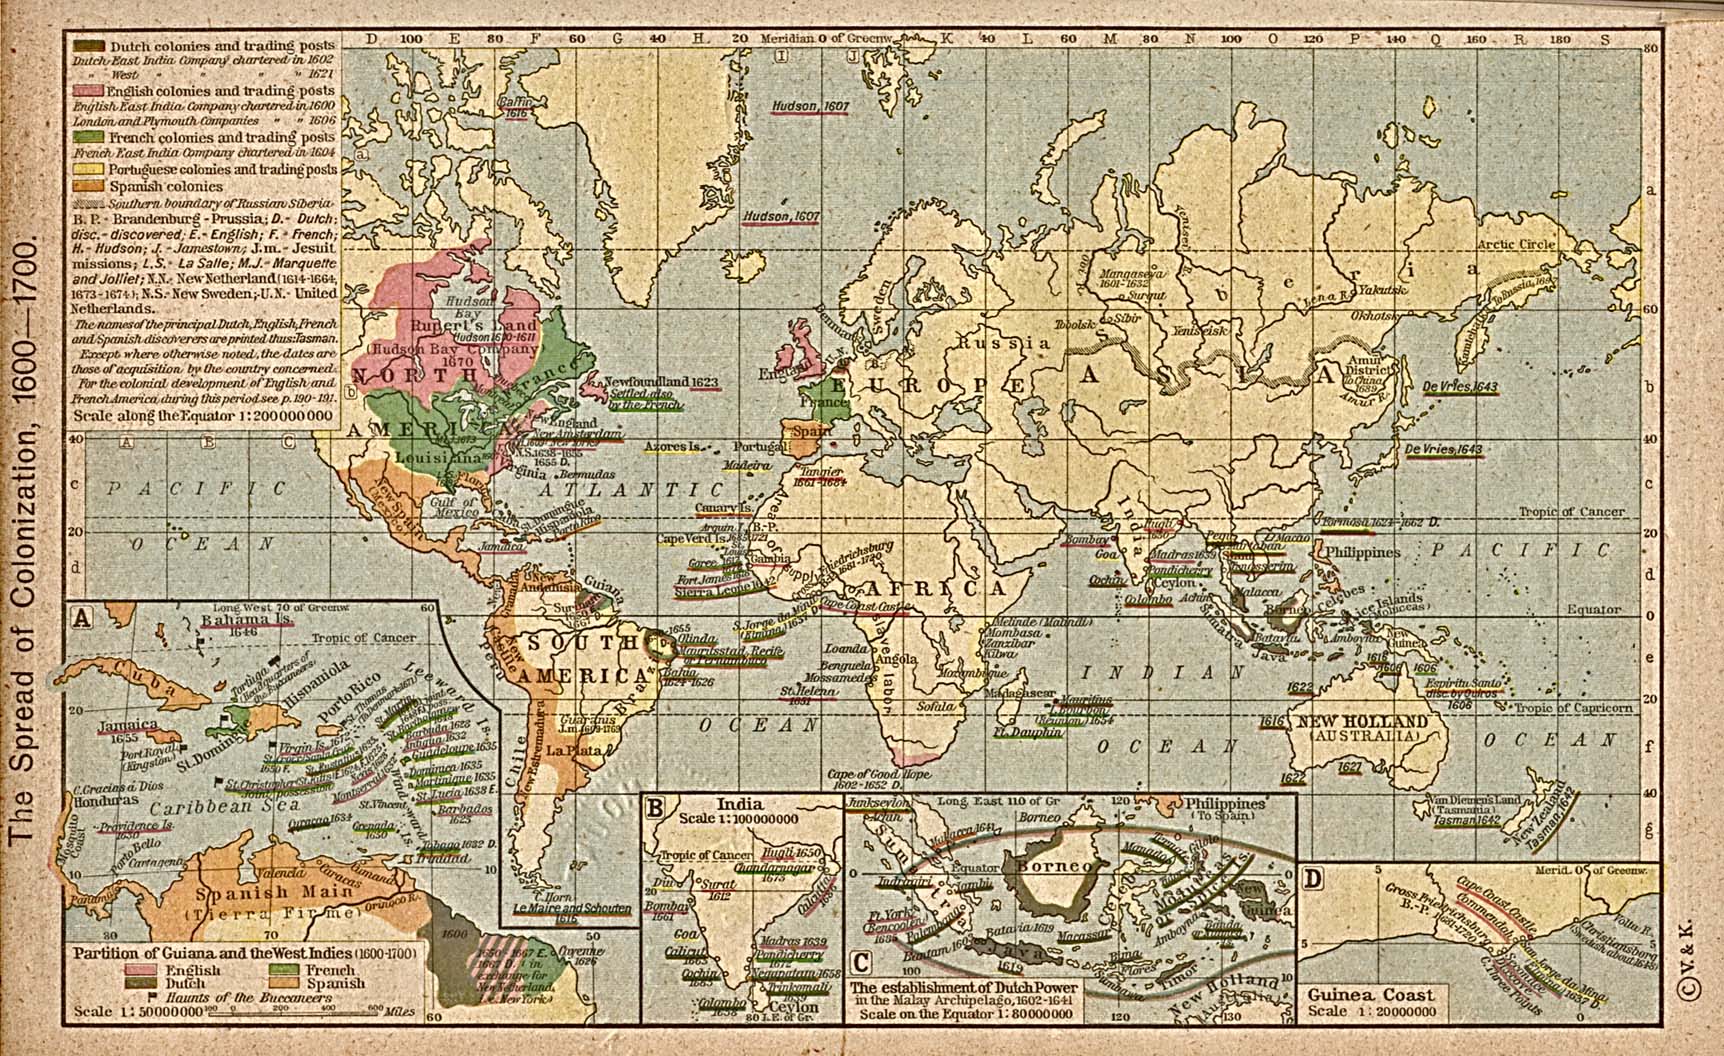 World Colonization Map 1600 1700